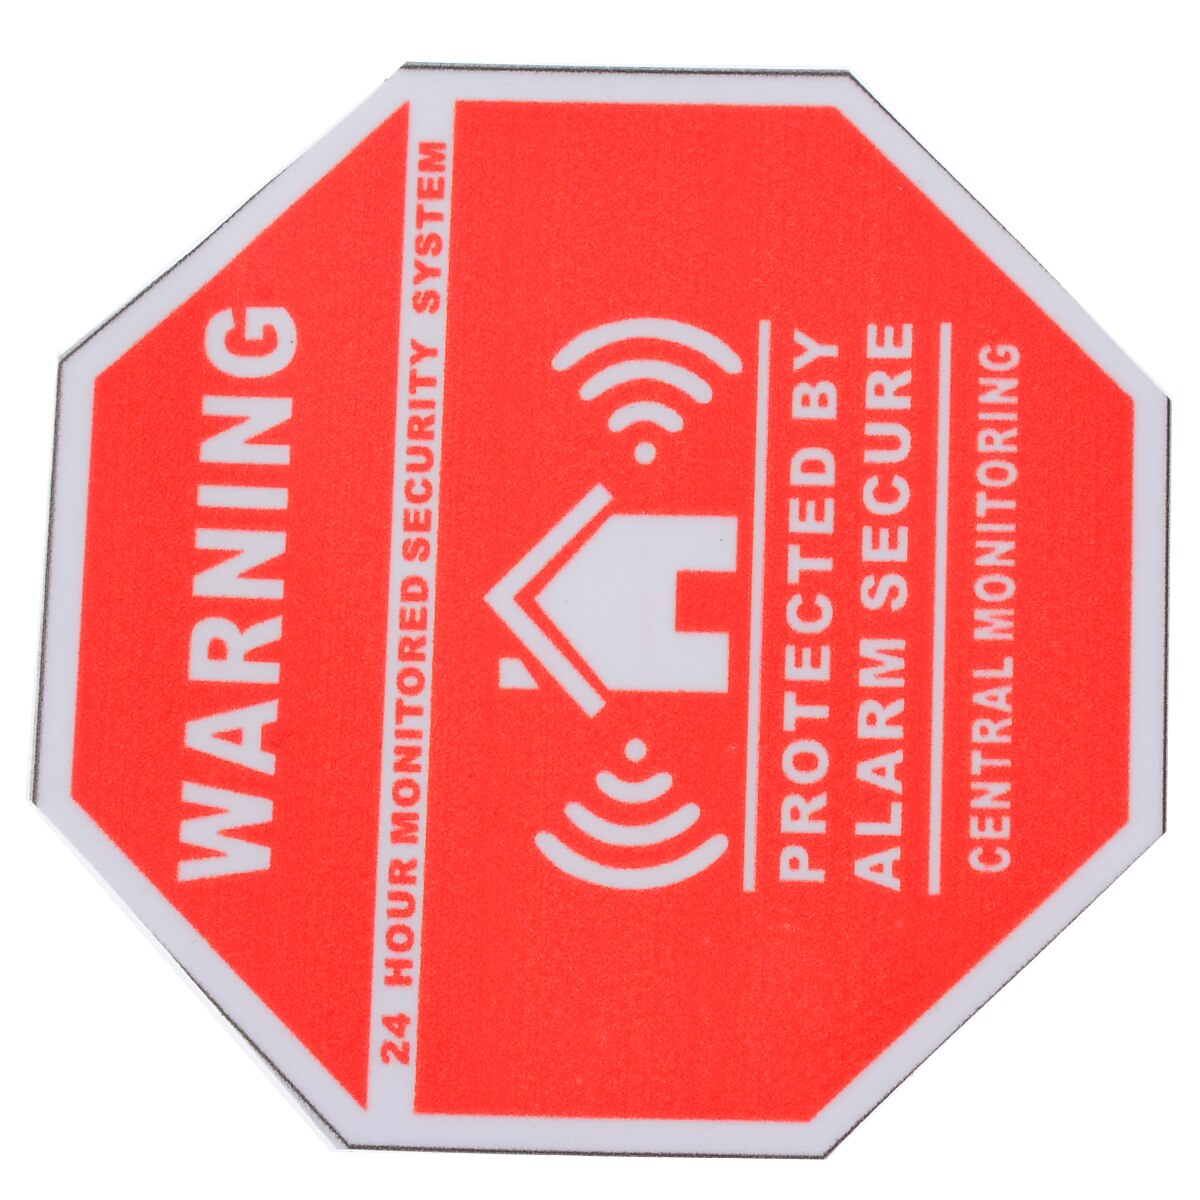 Mayitr 5 stk alarmsikkerhedsdekaler advarselsskilte vinylvindue dørklistermærker til hjemmets sikkerhedsforsyninger